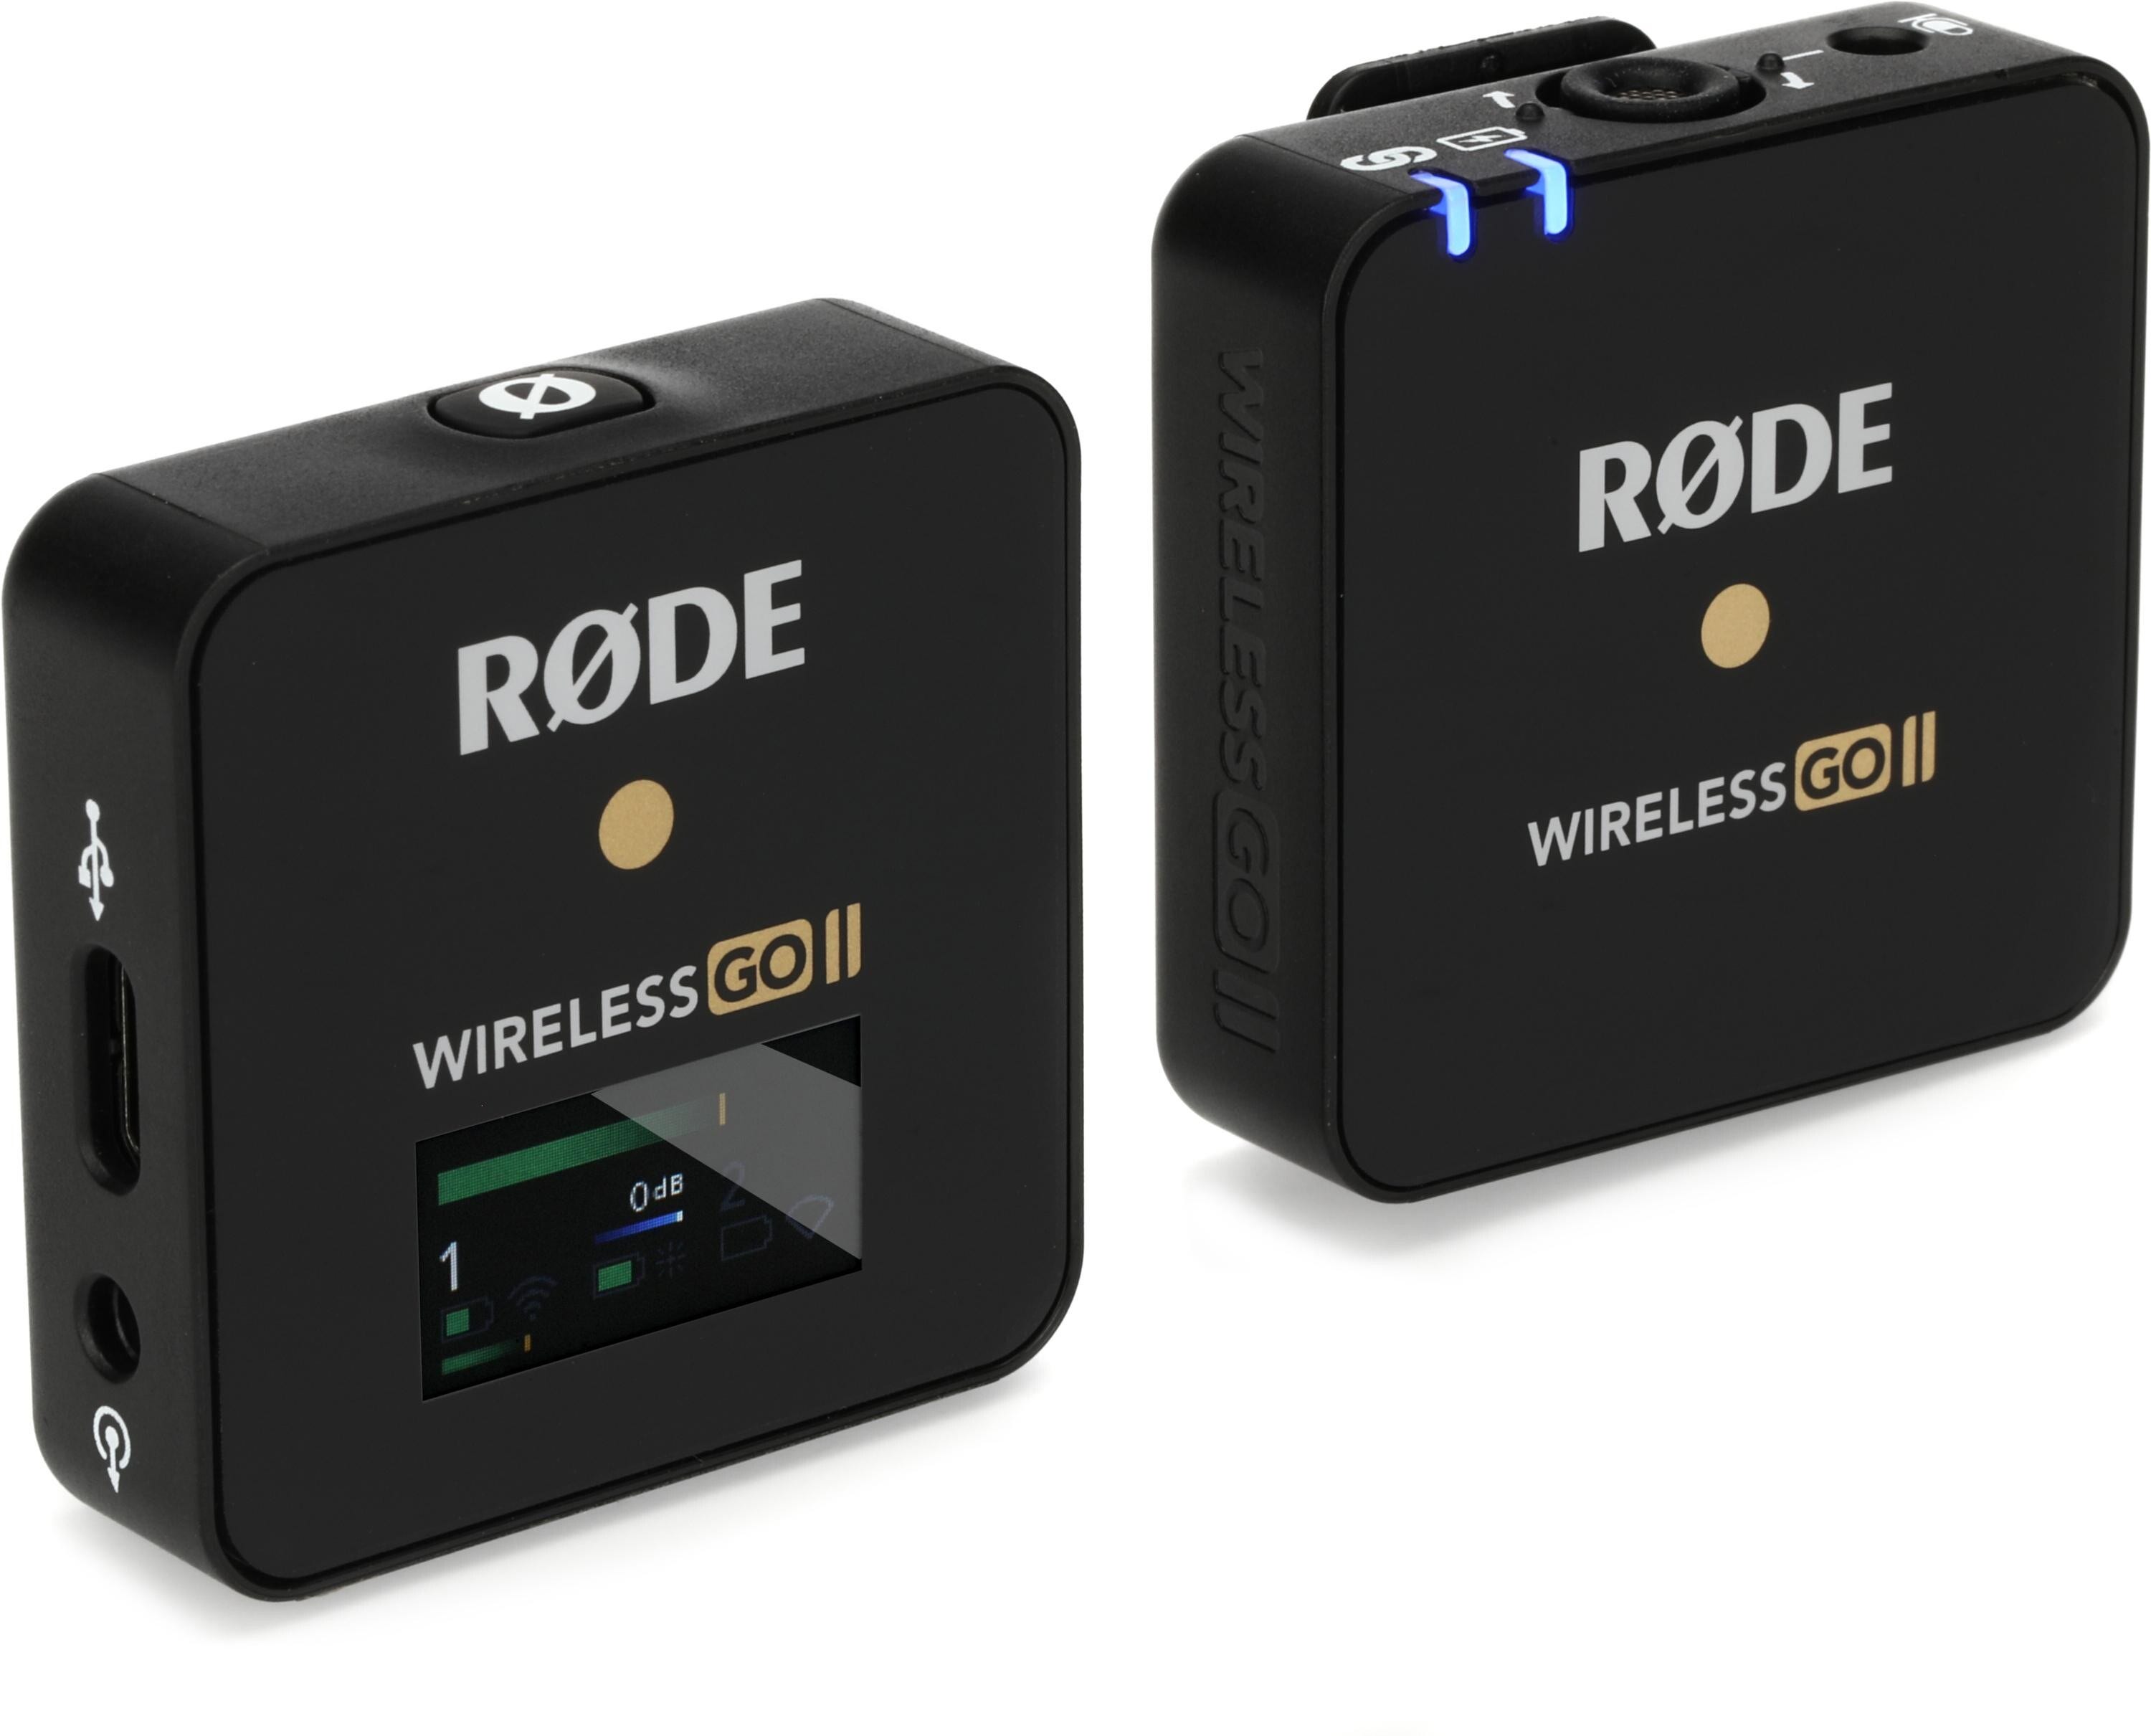 RODE Wireless PRO: Broadcast-Quality Wireless Audio 